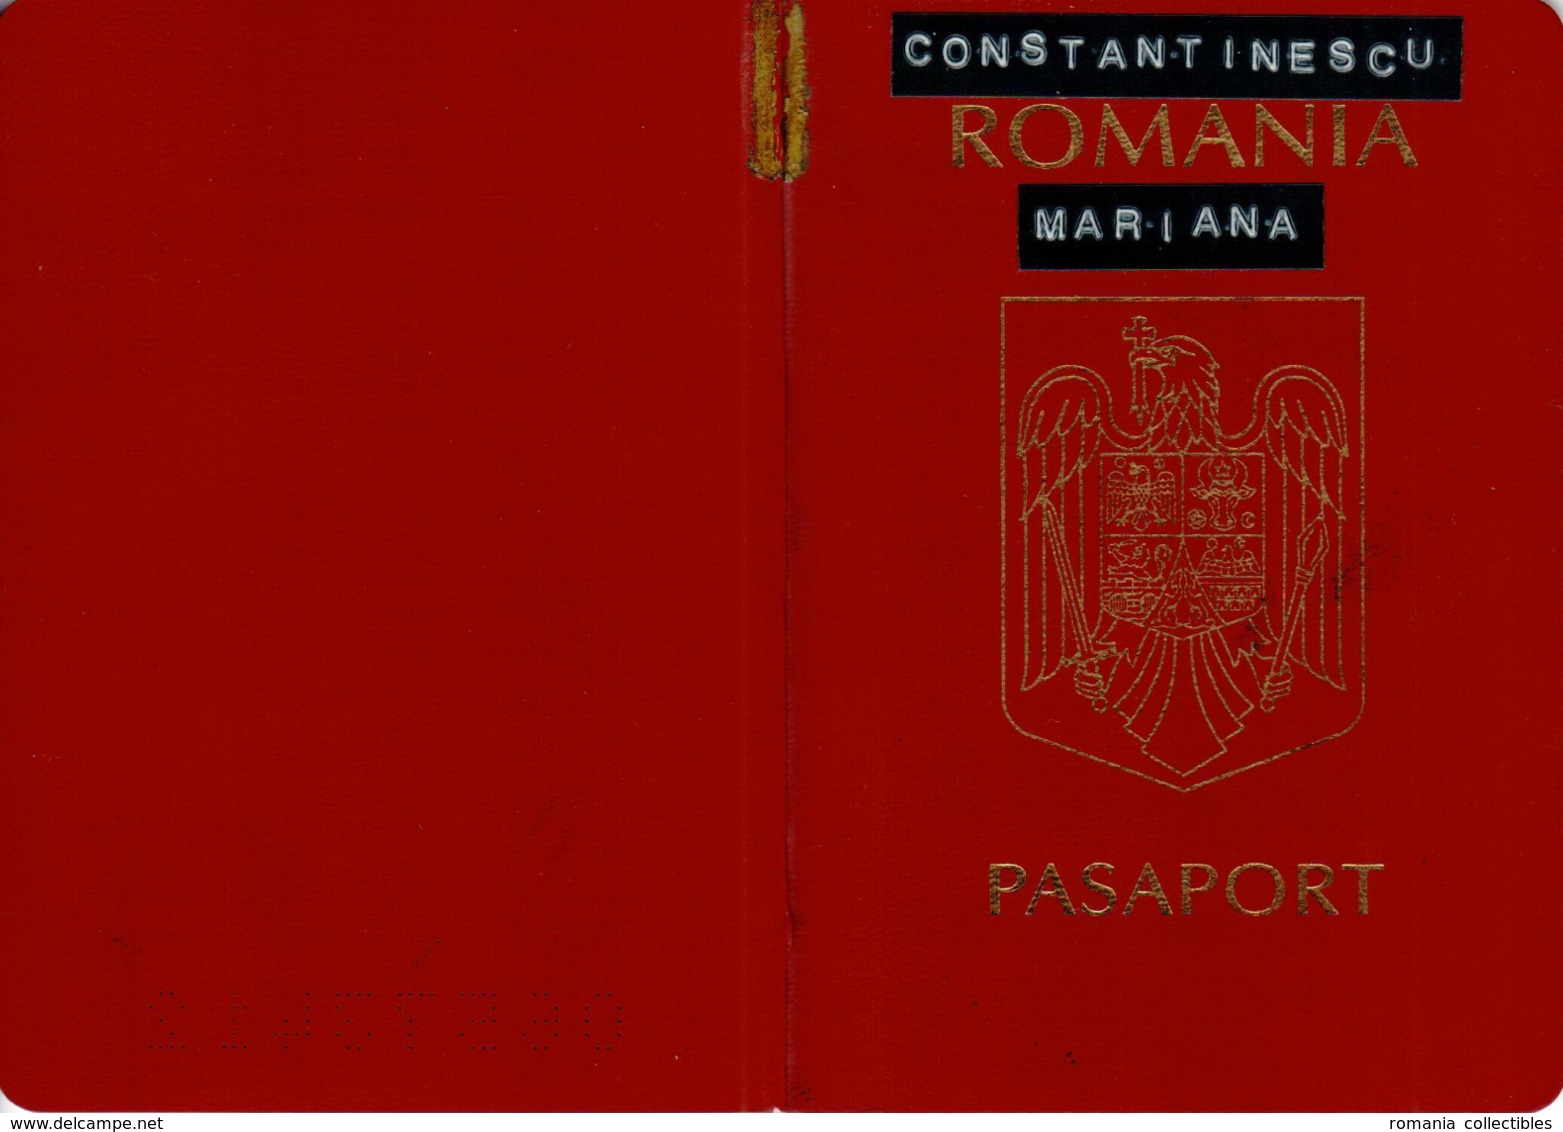 Romania, 2002, Vintage Expired Passport - visas and stamps: Hungary, Austria, Slovenia